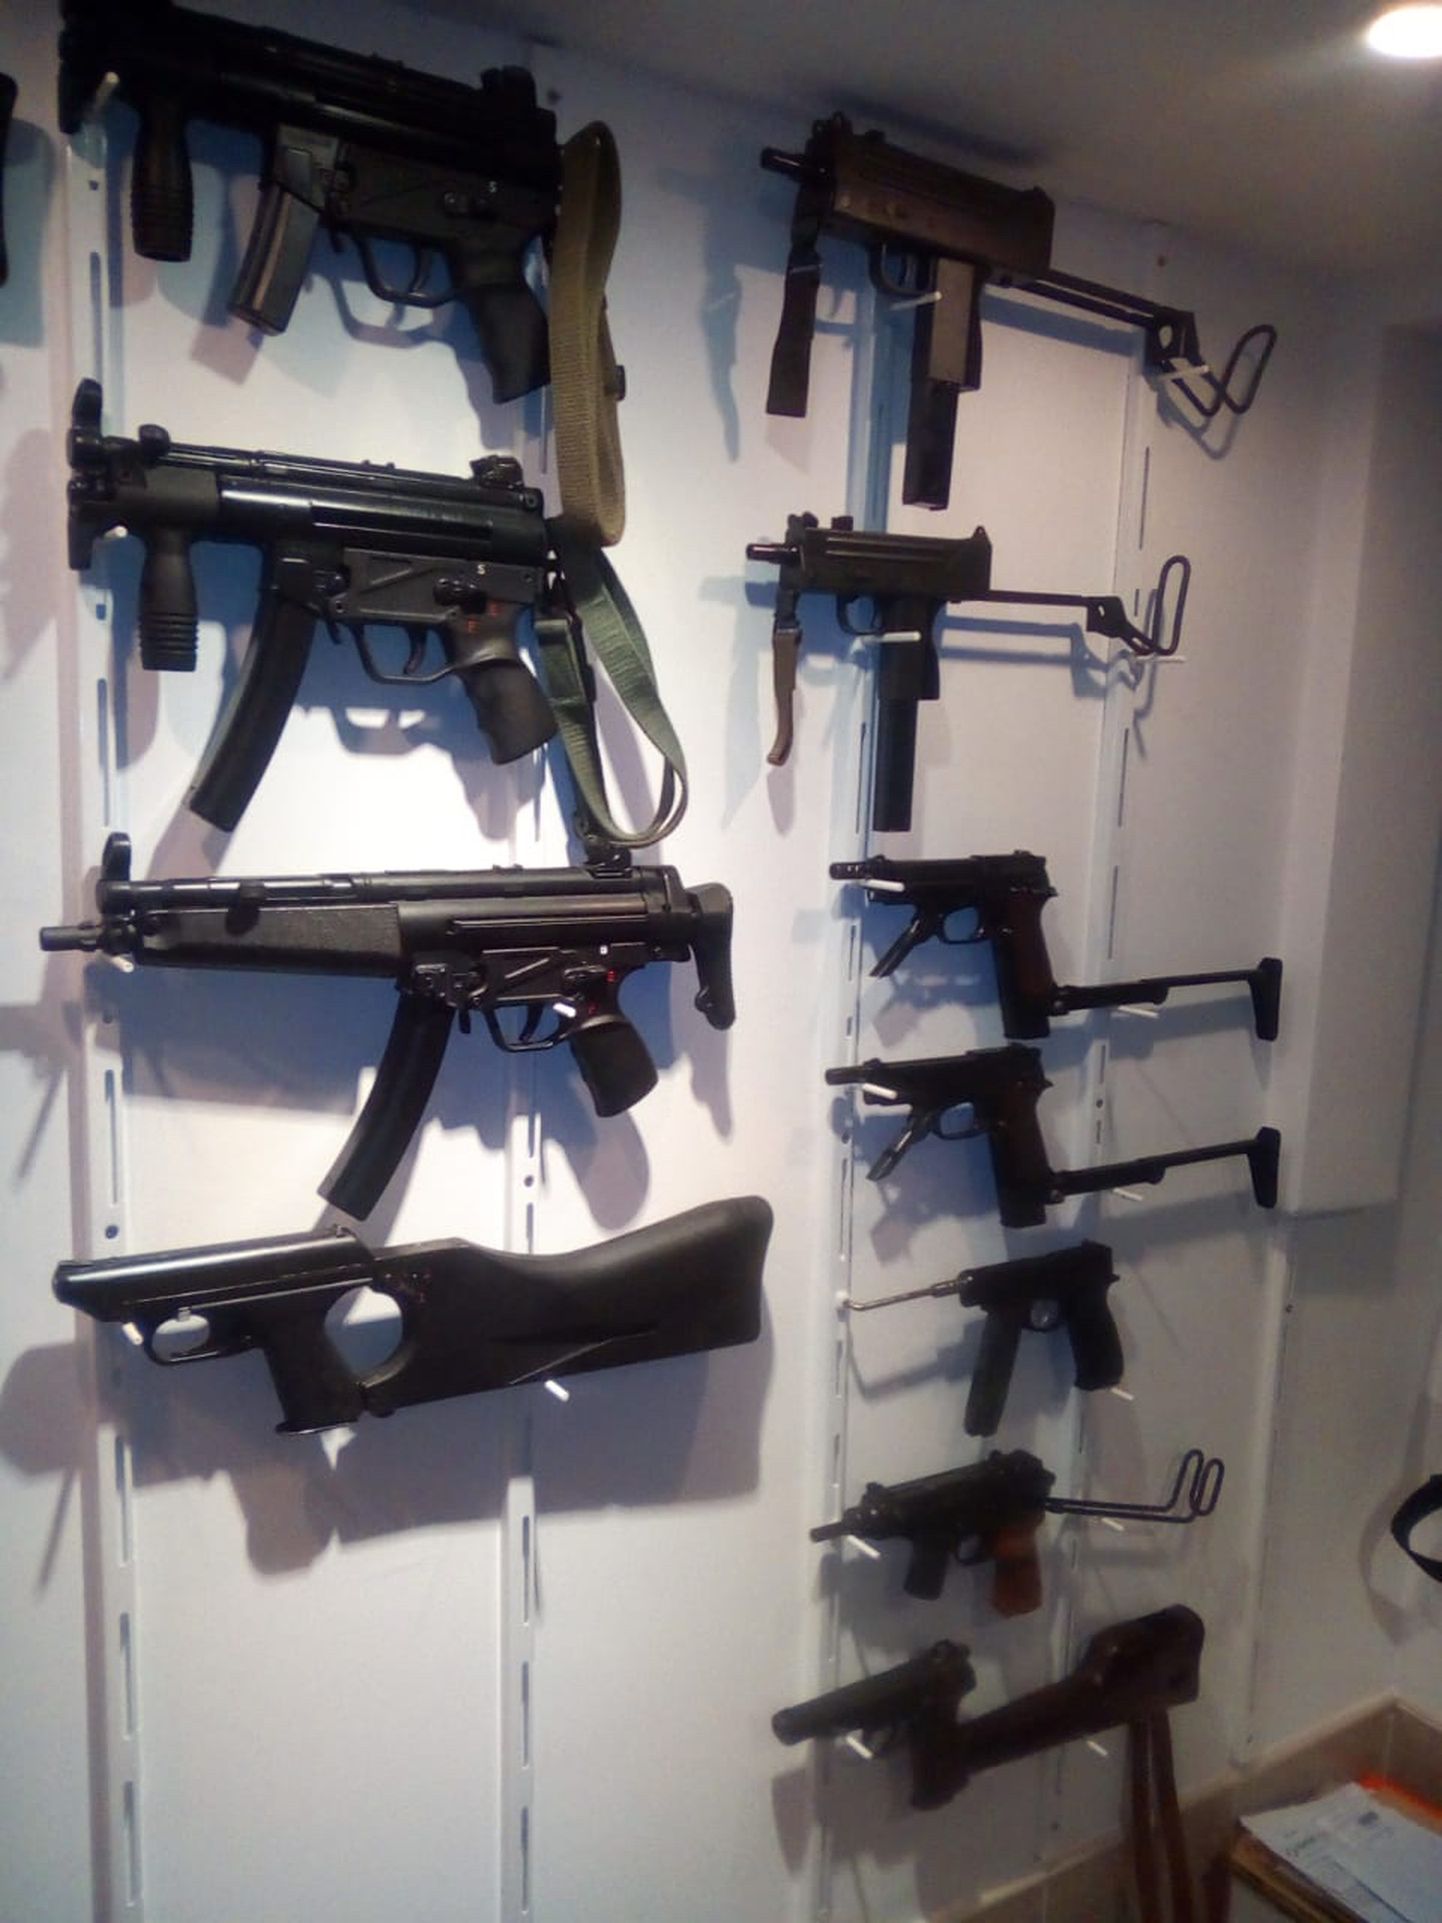 Fotol on väike osa konfiskeeritud relvadest. Võimud konfiskeerisid peaaegu tuhat relva ja sadu lõhkekehi kuritegelikult jõugult.